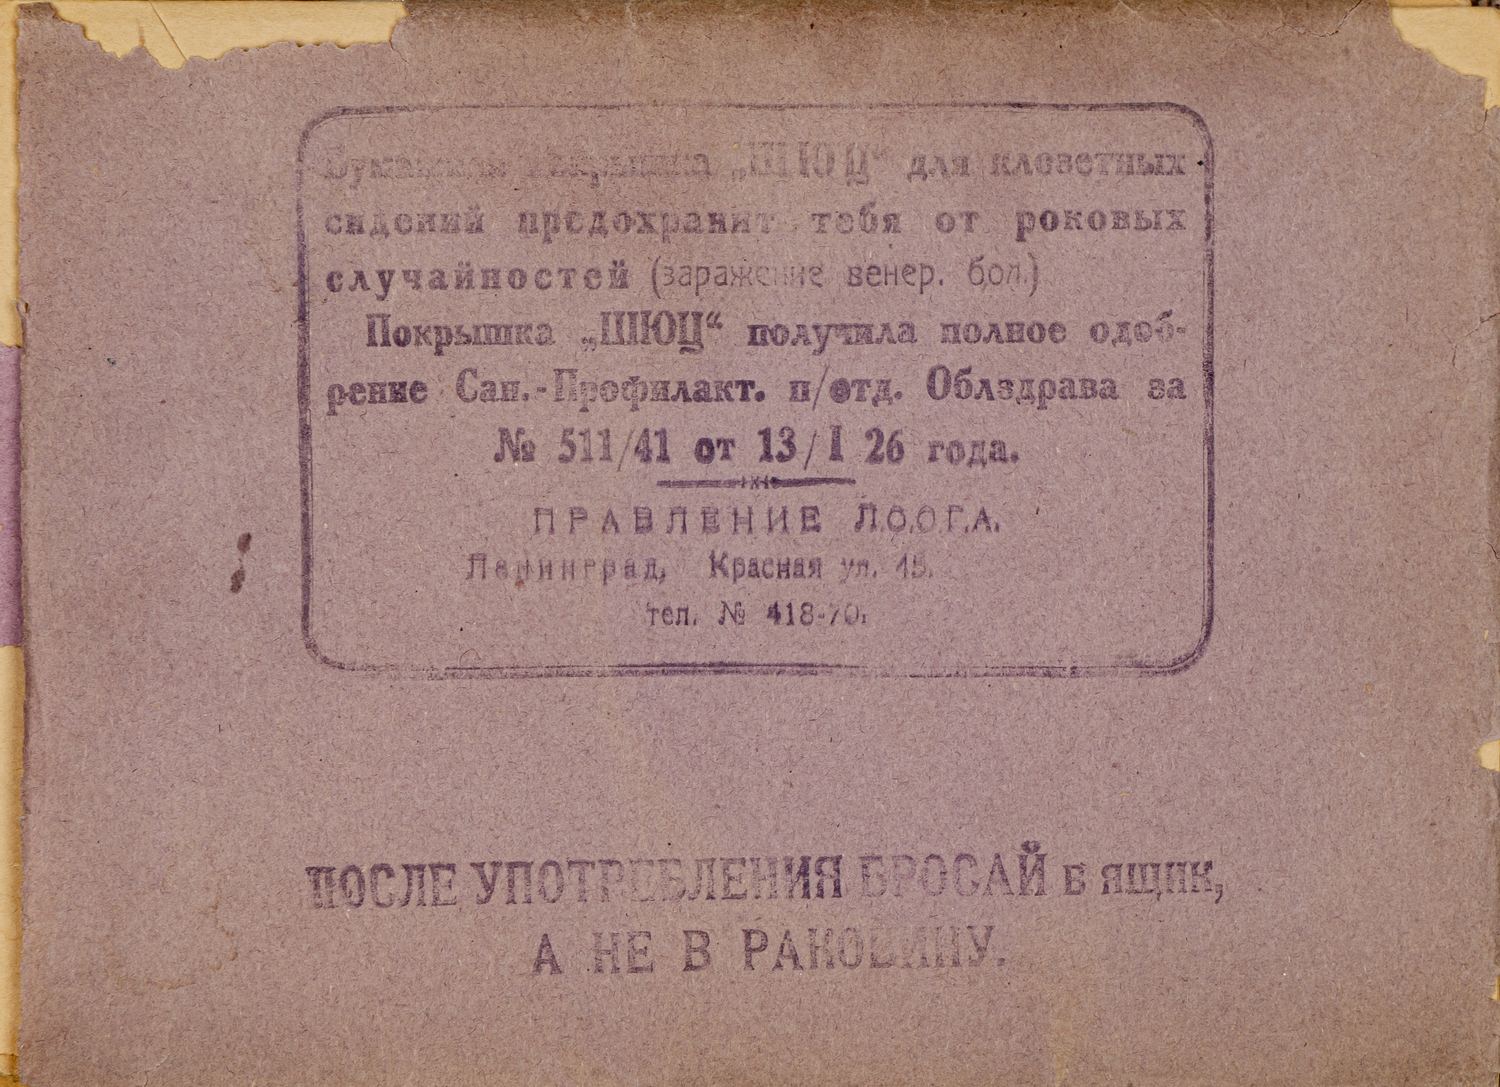 8 бумажных покрышек «Шюц» для клозетных сидений. СССР, вторая половина 1920-х годов.